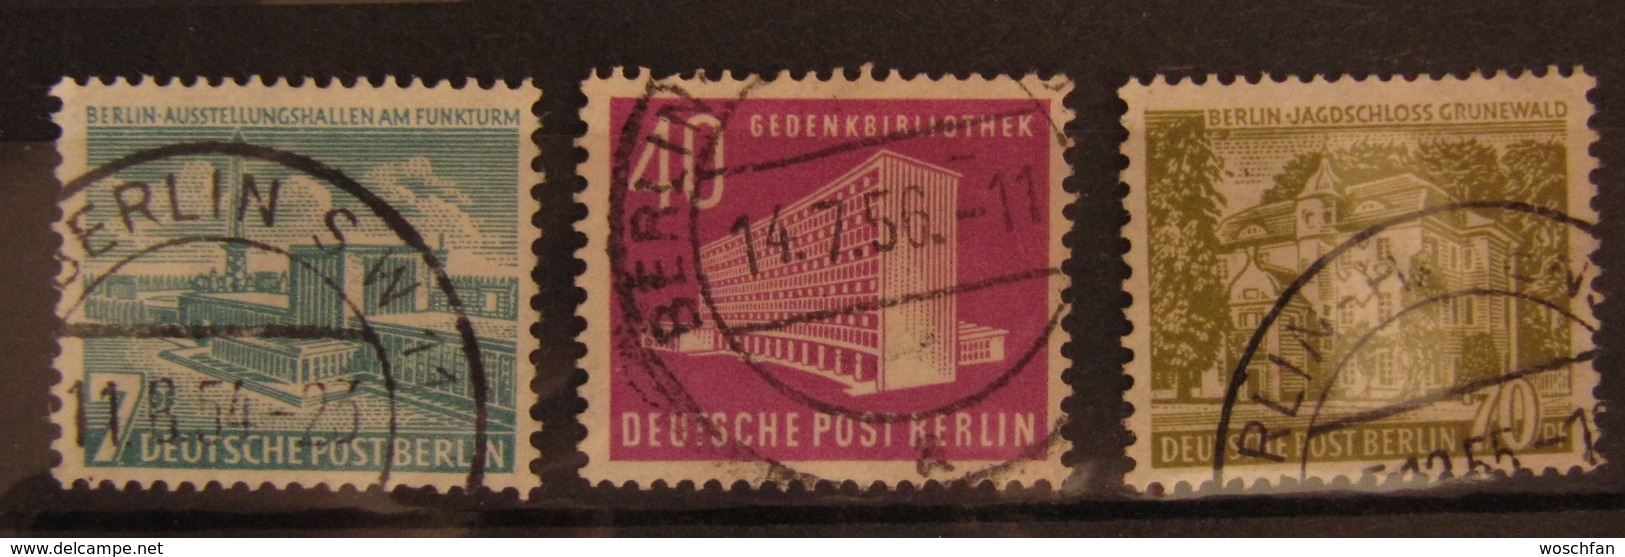 Berlin Bauten, Mi. 121-123 O GST Used, Value 30,- - Gebraucht